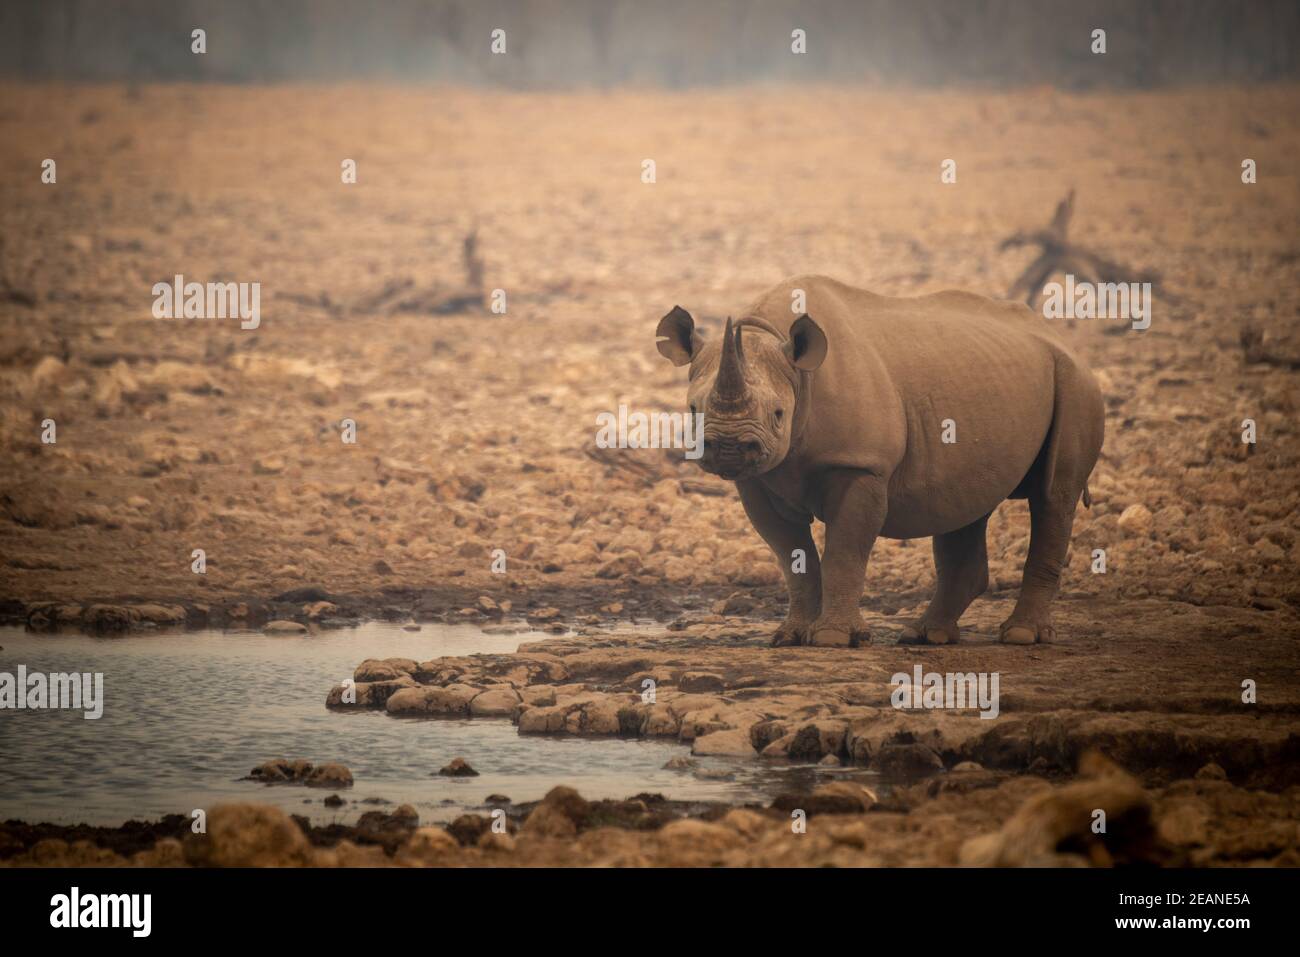 El rinoceronte negro se encuentra junto a un agujero de agua entre las rocas Foto de stock